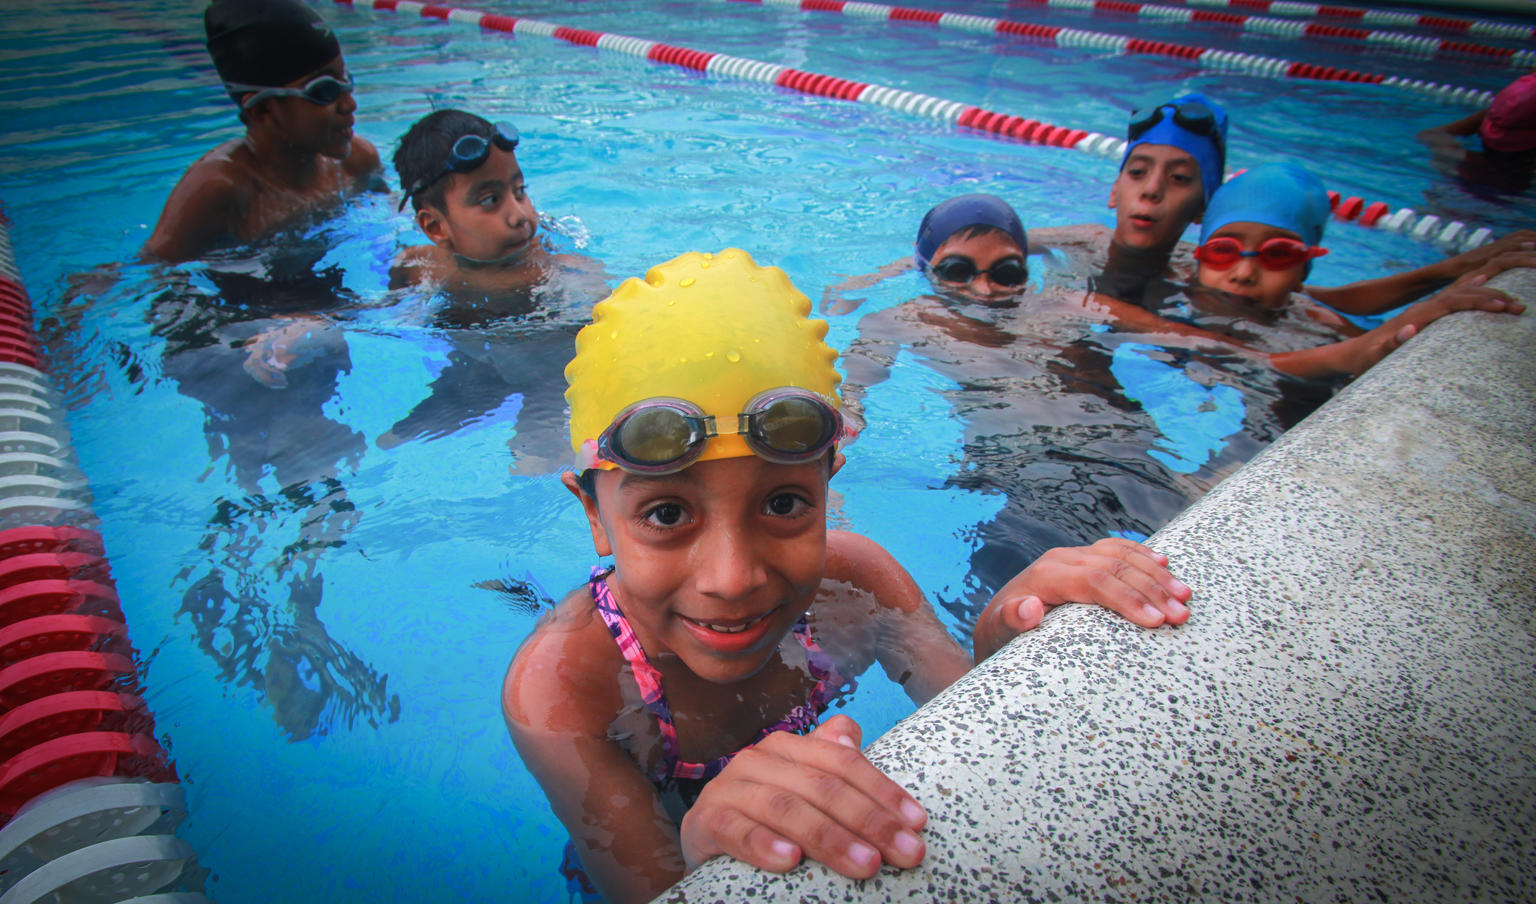 日本水泳連盟 「子どもの権利とスポーツの原則」に賛同 ～「すべての子どものすこやかな成長のための水泳環境づくり宣言」発表